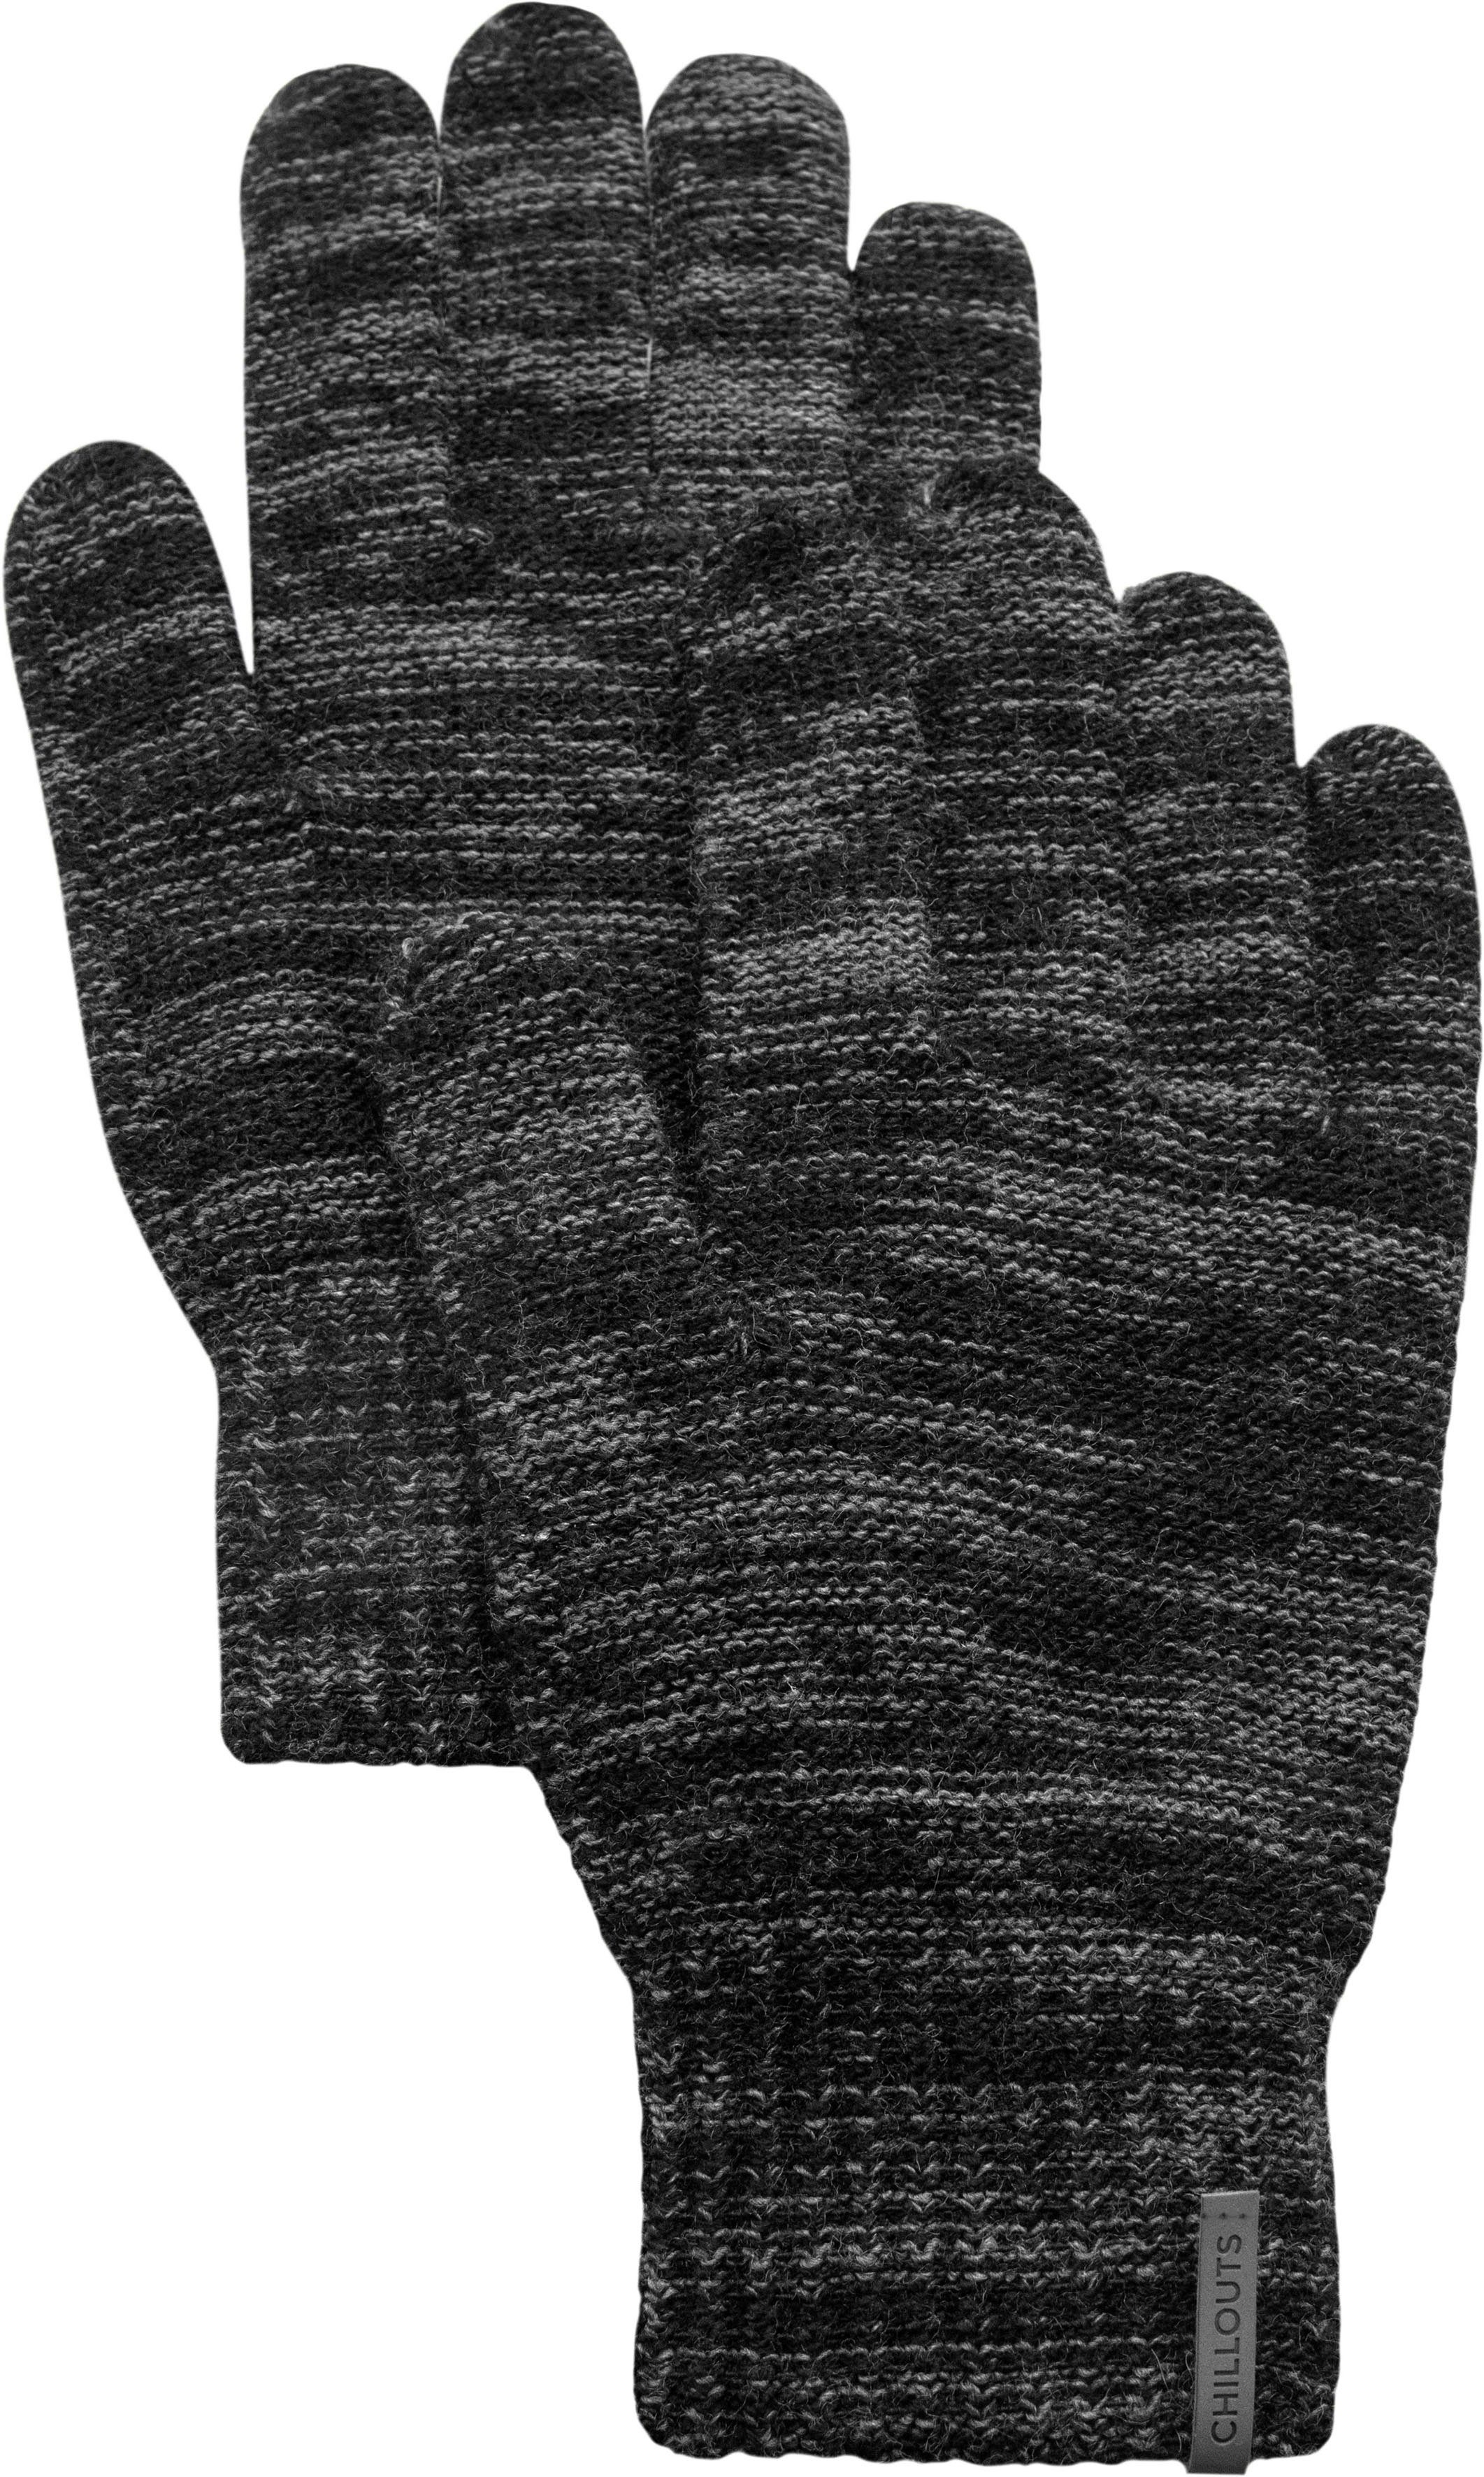 chillouts Strickhandschuhe Ben Glove | Strickhandschuhe